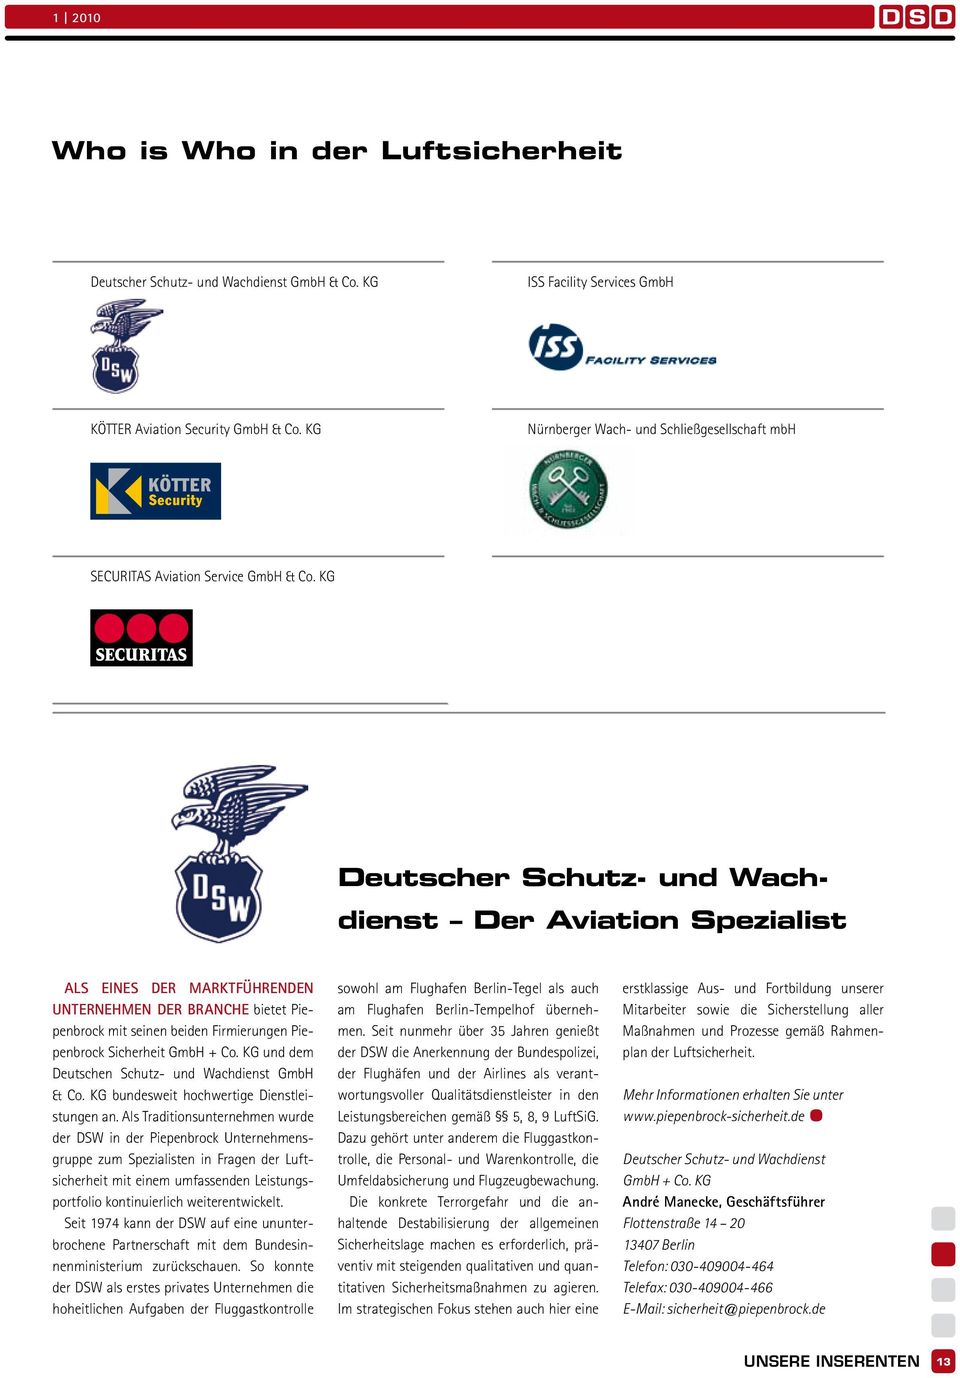 KG Deutscher Schutz- und Wachdienst Der Aviation Spezialist Als eines der marktführenden Unternehmen der Branche bietet Piepenbrock mit seinen beiden Firmierungen Piepenbrock Sicherheit GmbH + Co.